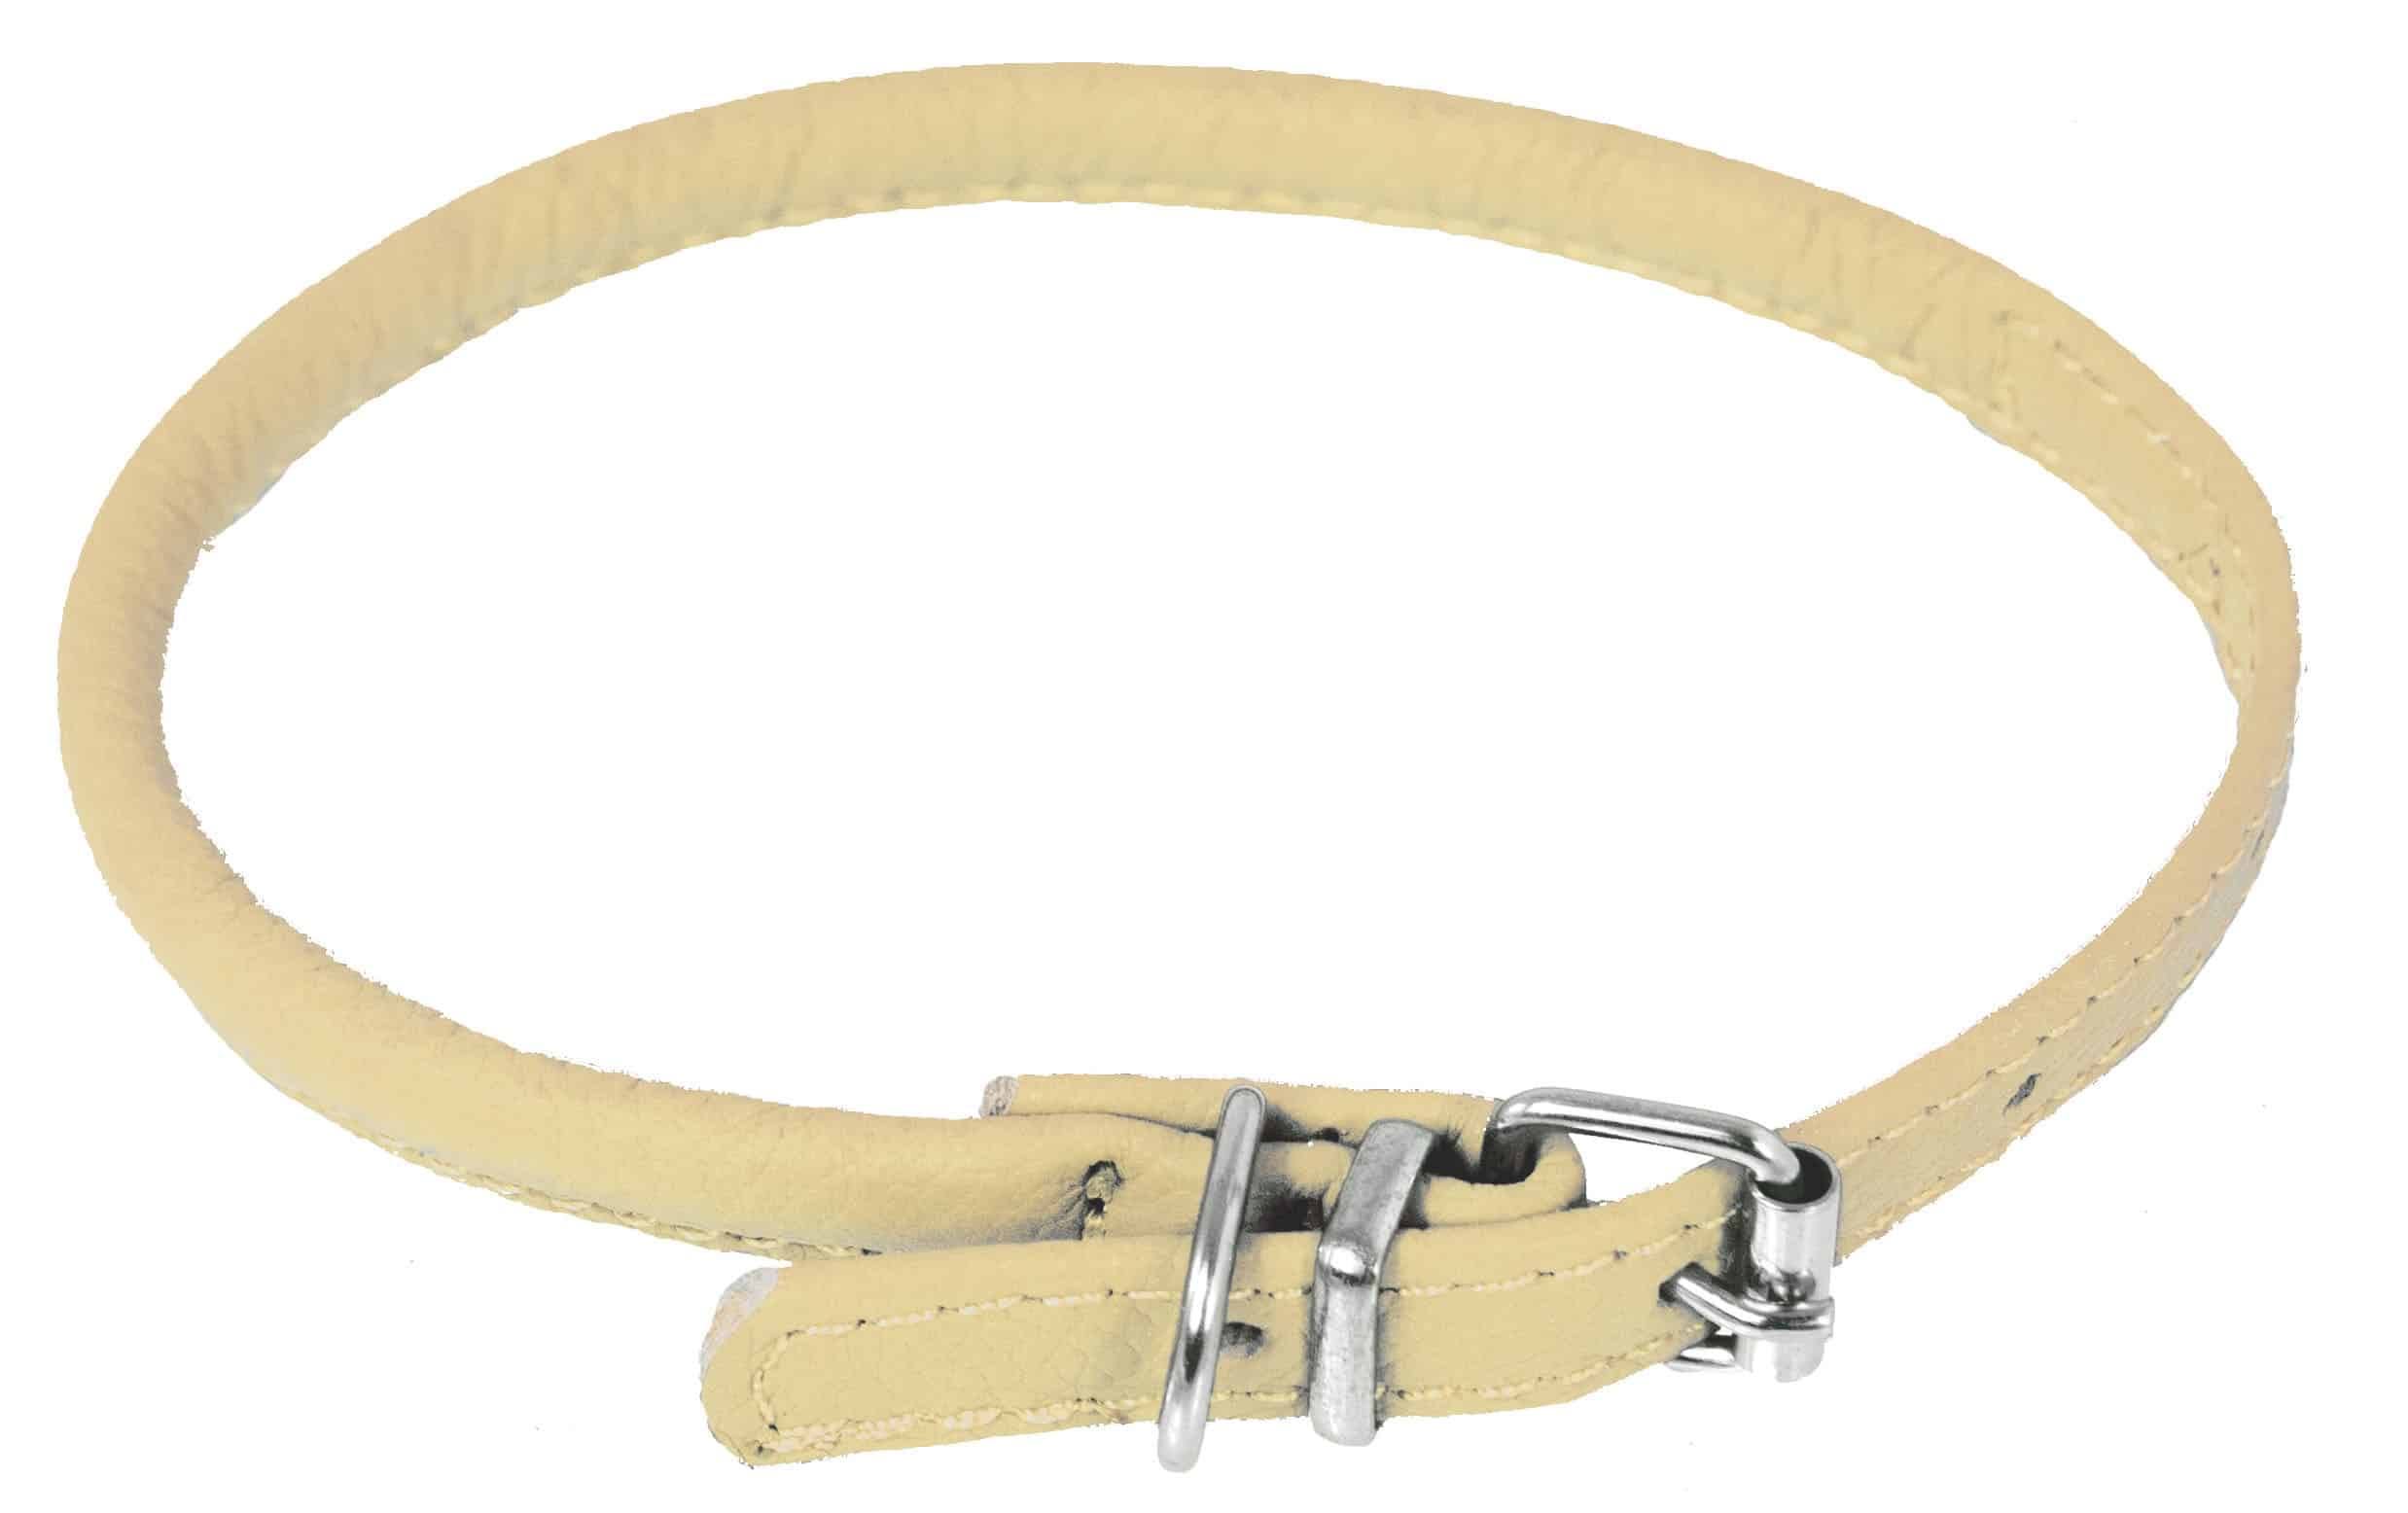 Dogline Round Leather Collar - Beige, 3/8"x16"-19"